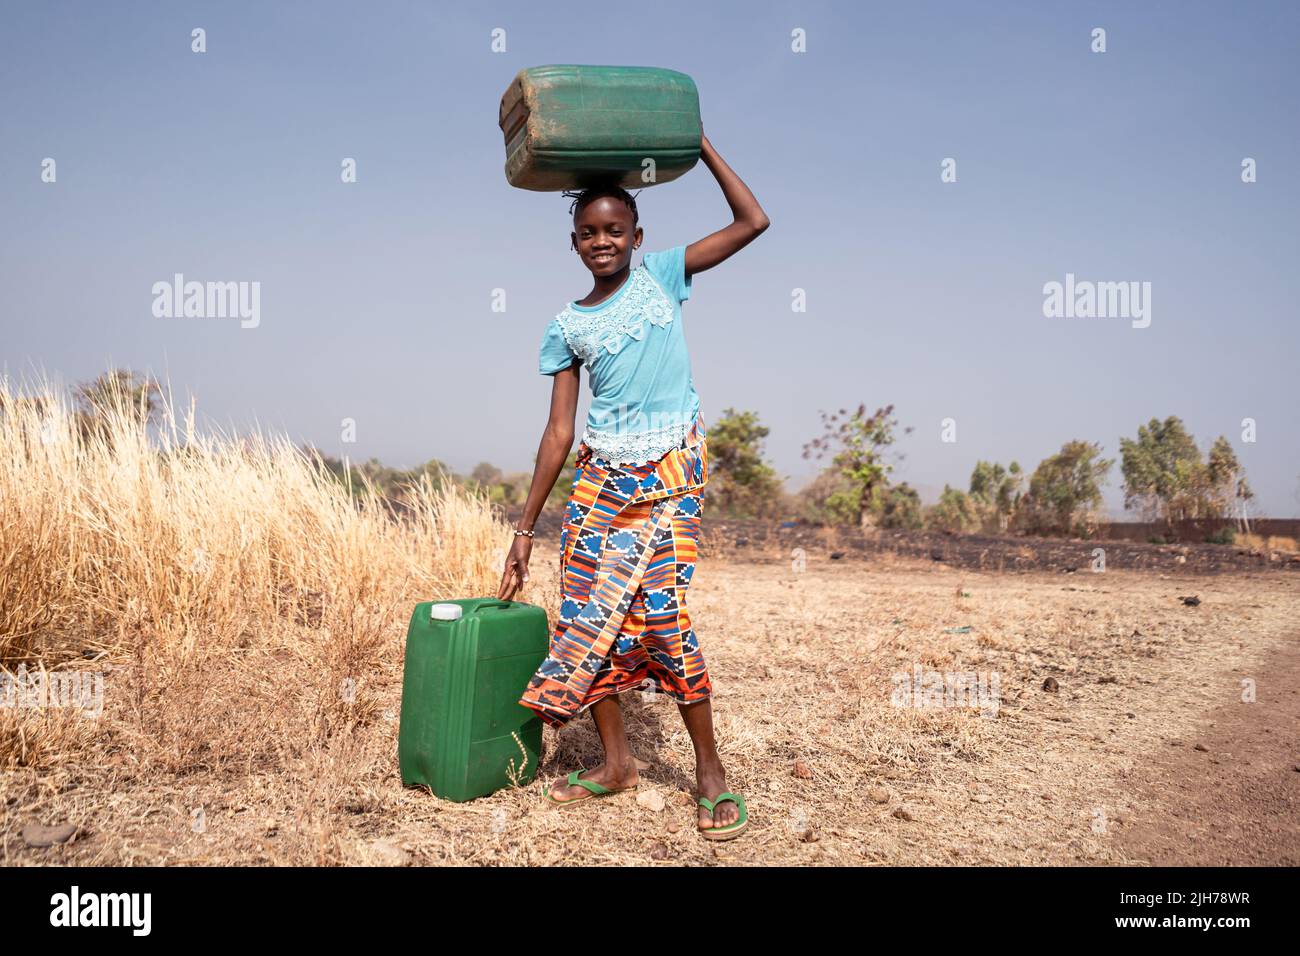 Carina bambina africana occidentale con contenitori d'acqua; simbolo per la mancanza di infrastrutture d'acqua in molti poveri villaggi africani Foto Stock